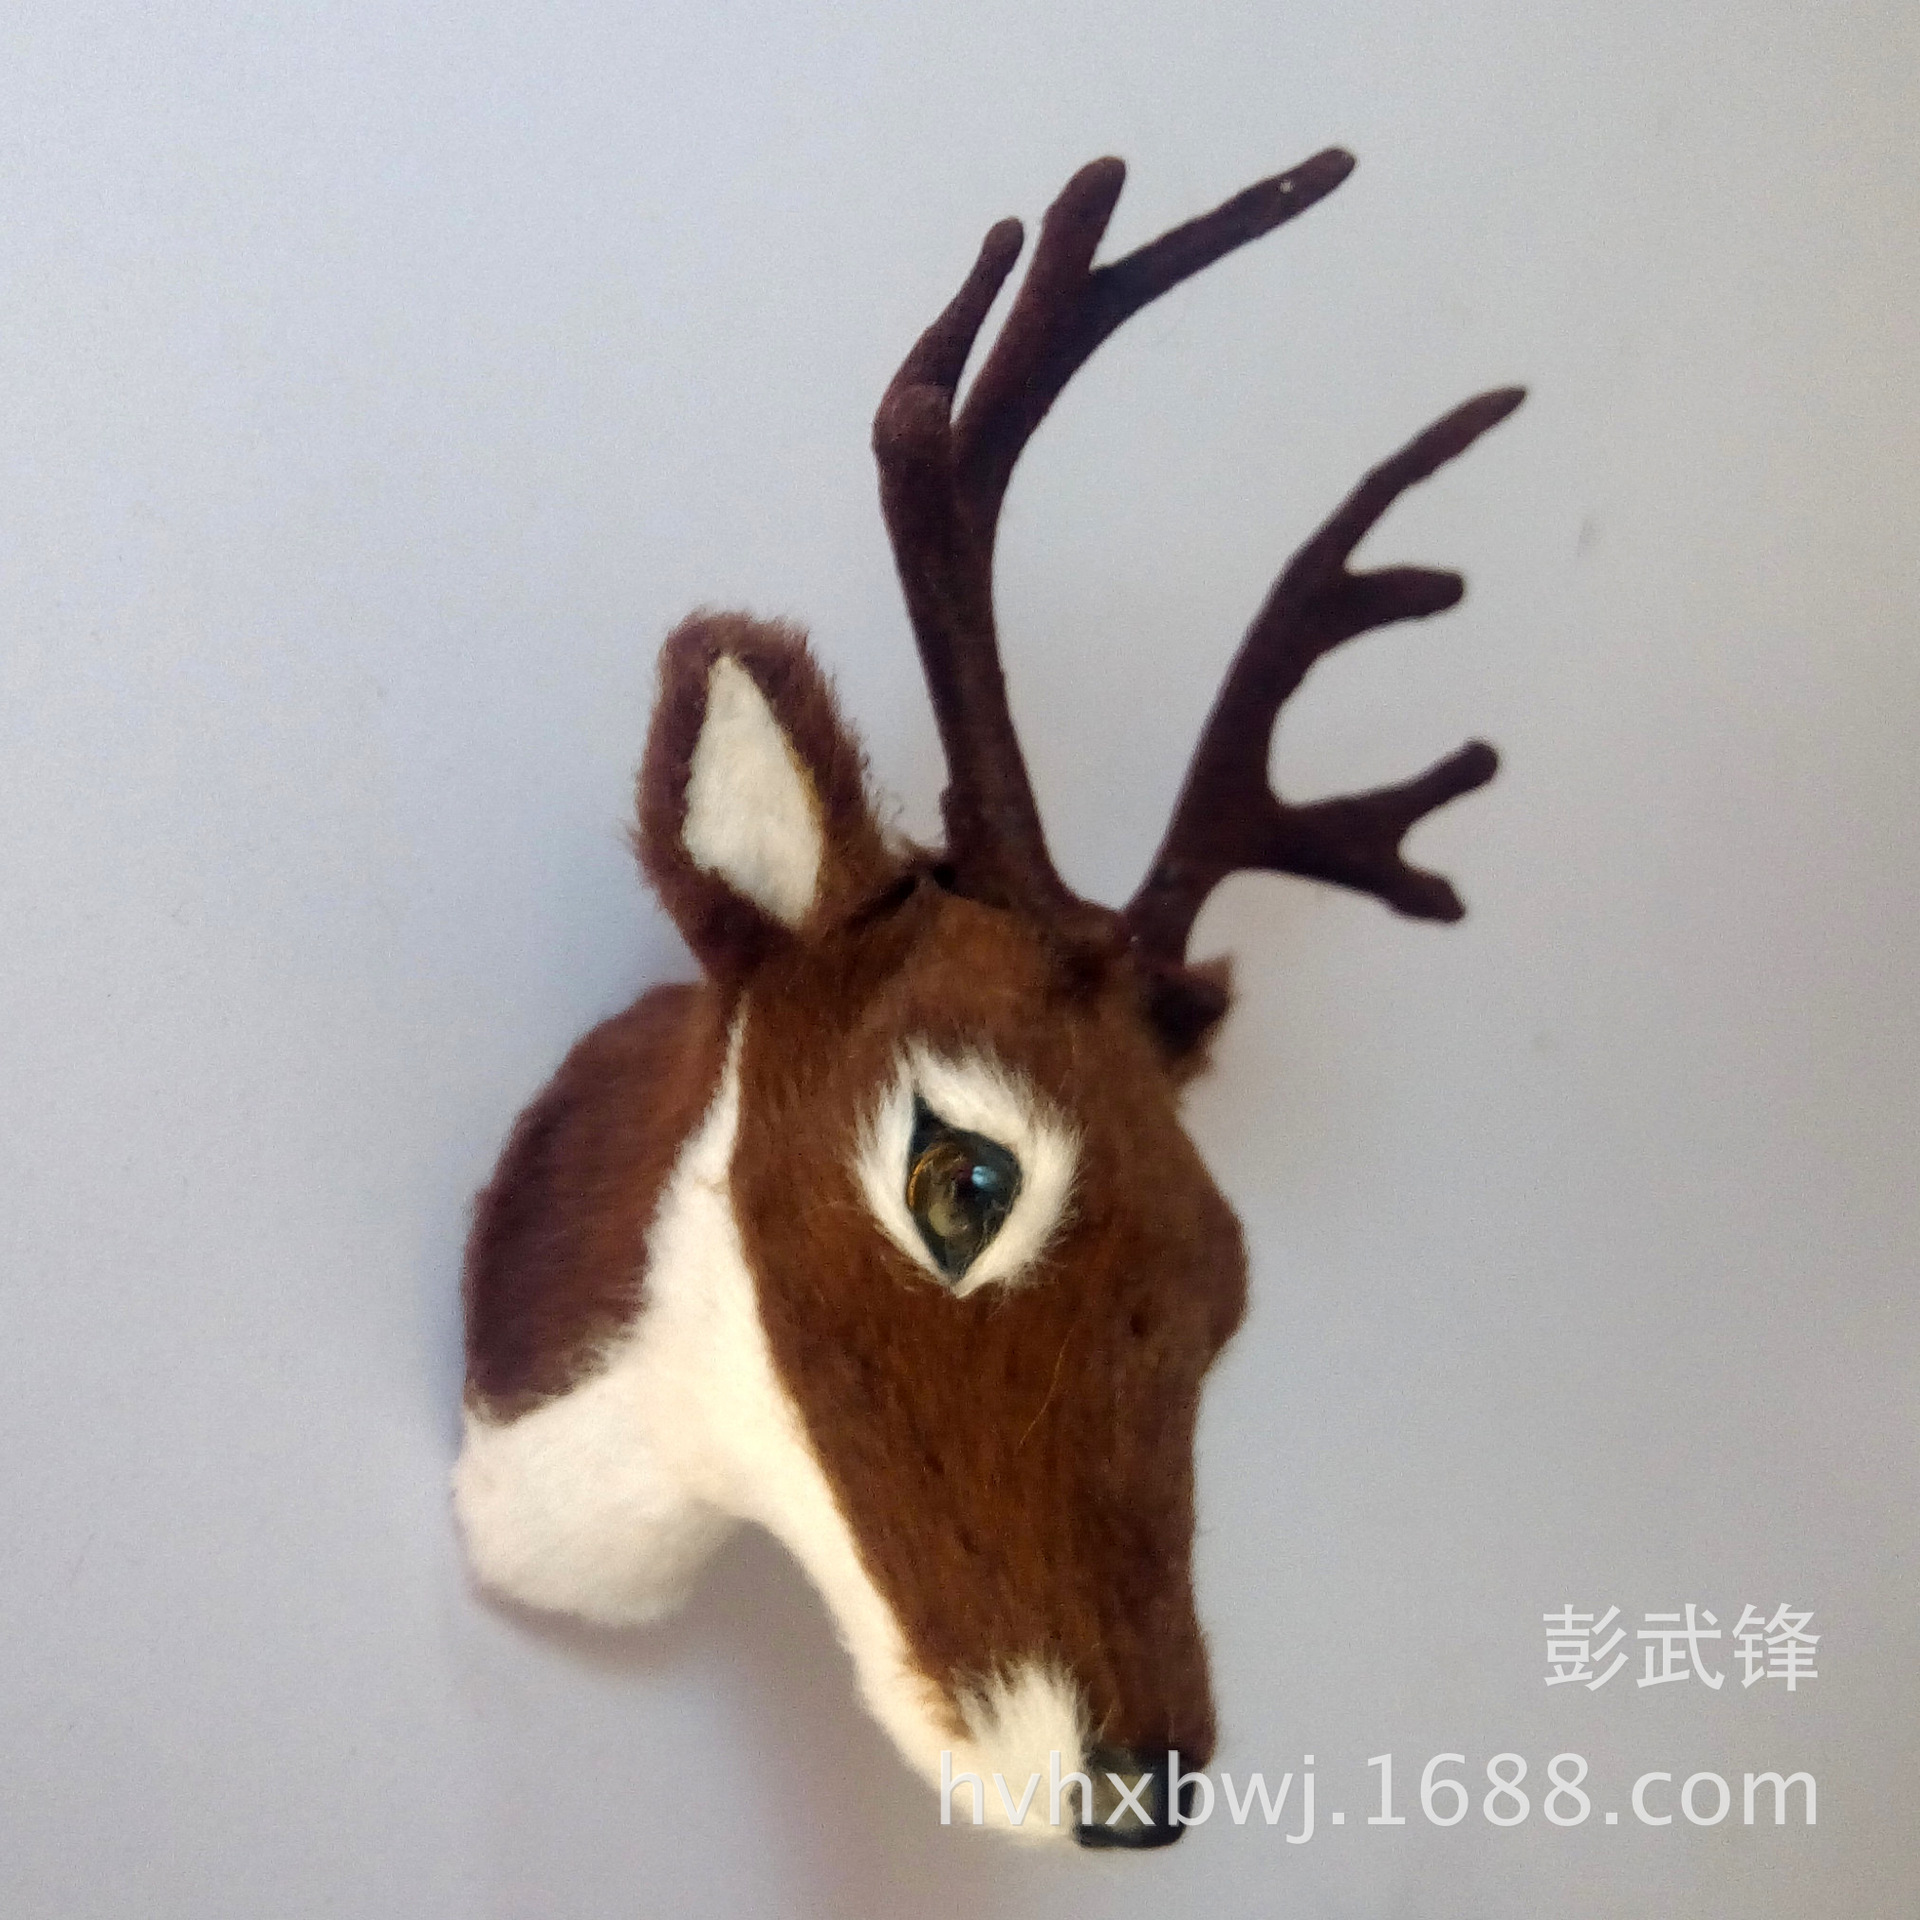 仿真小鹿头创意可爱动物磁性毛绒冰箱贴 年会礼品迷你鹿头玩具-阿里巴巴